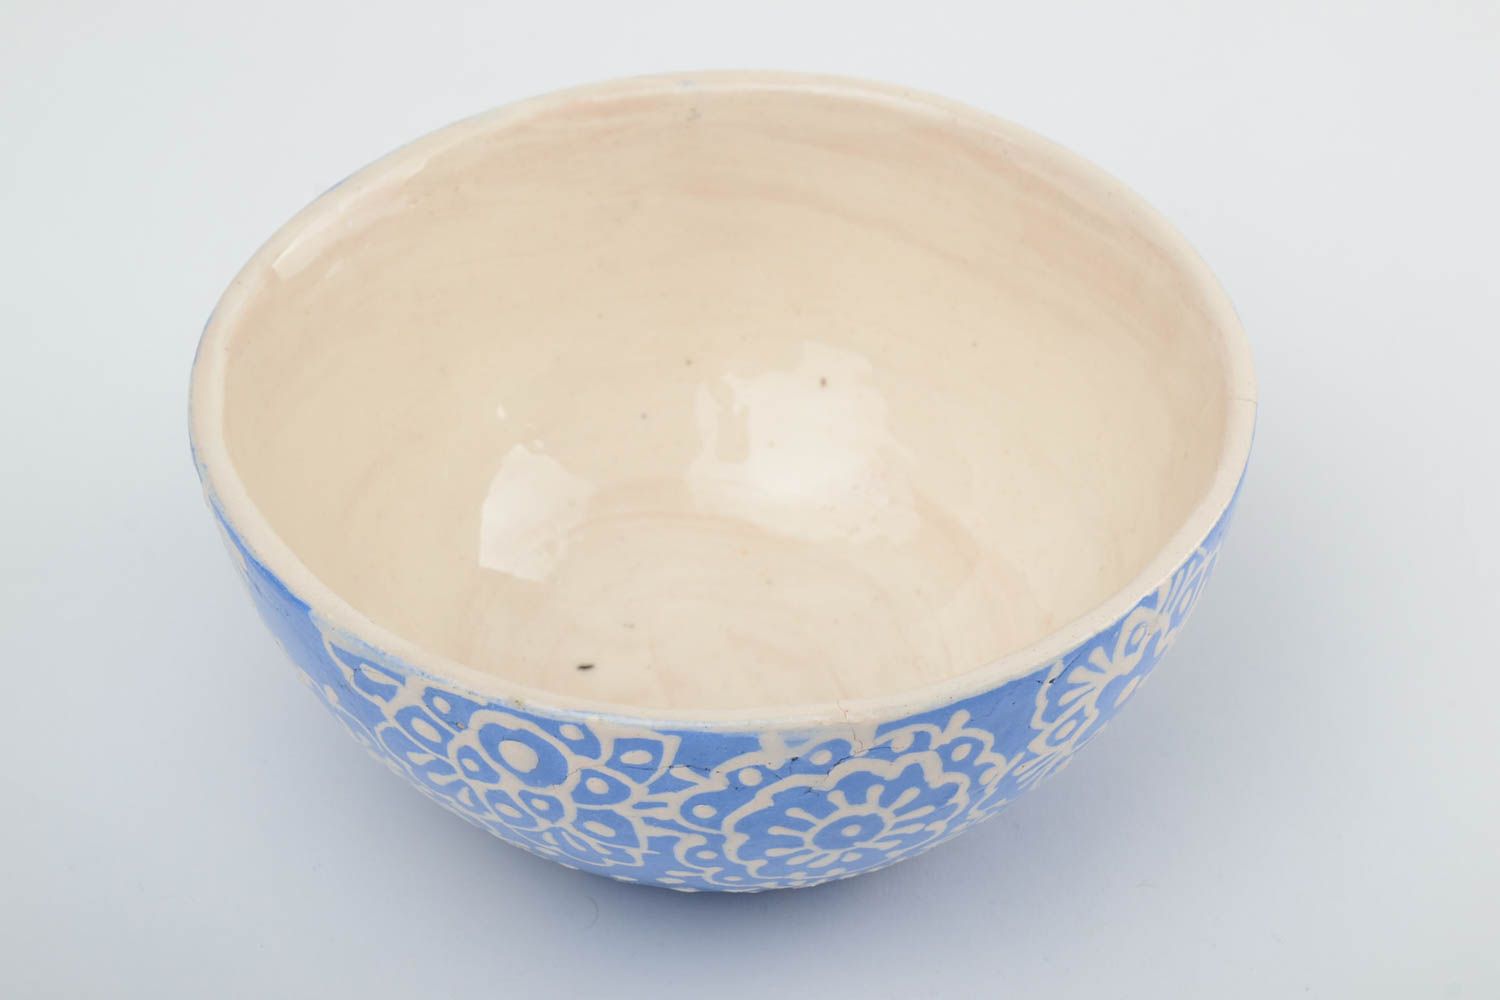 Глиняная миска глазурованная глубокая экологически чистая посуда 500 мл хенд мэйд фото 2